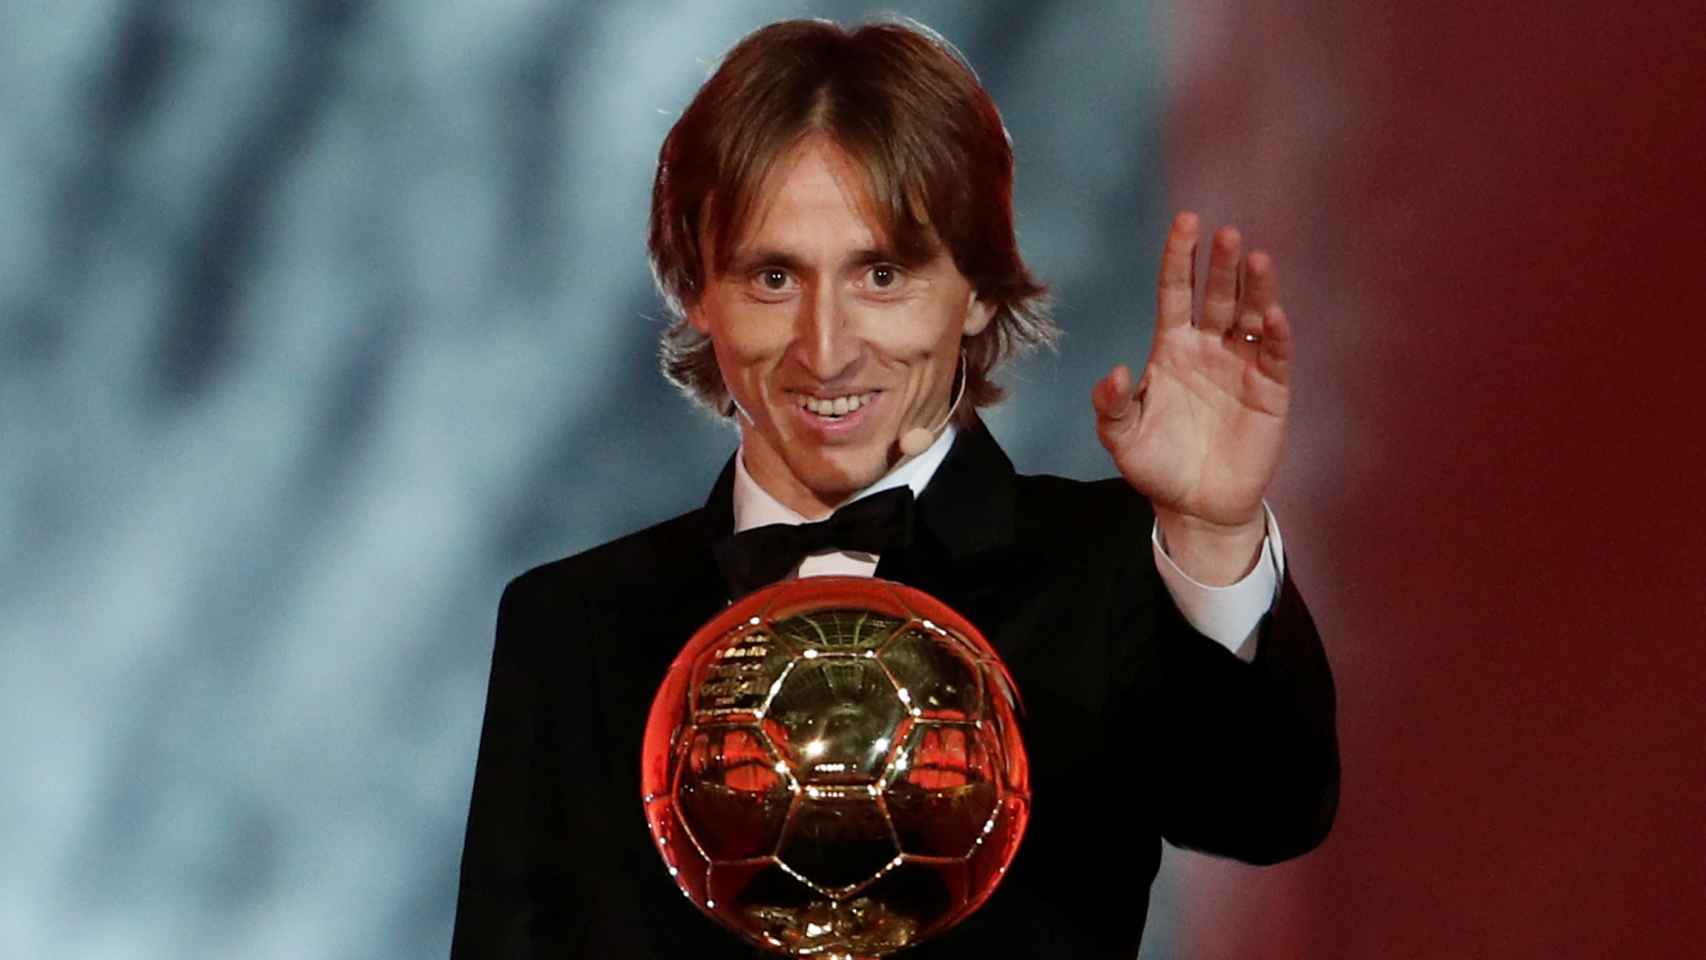 Luka Modric, Balón de Oro 2018